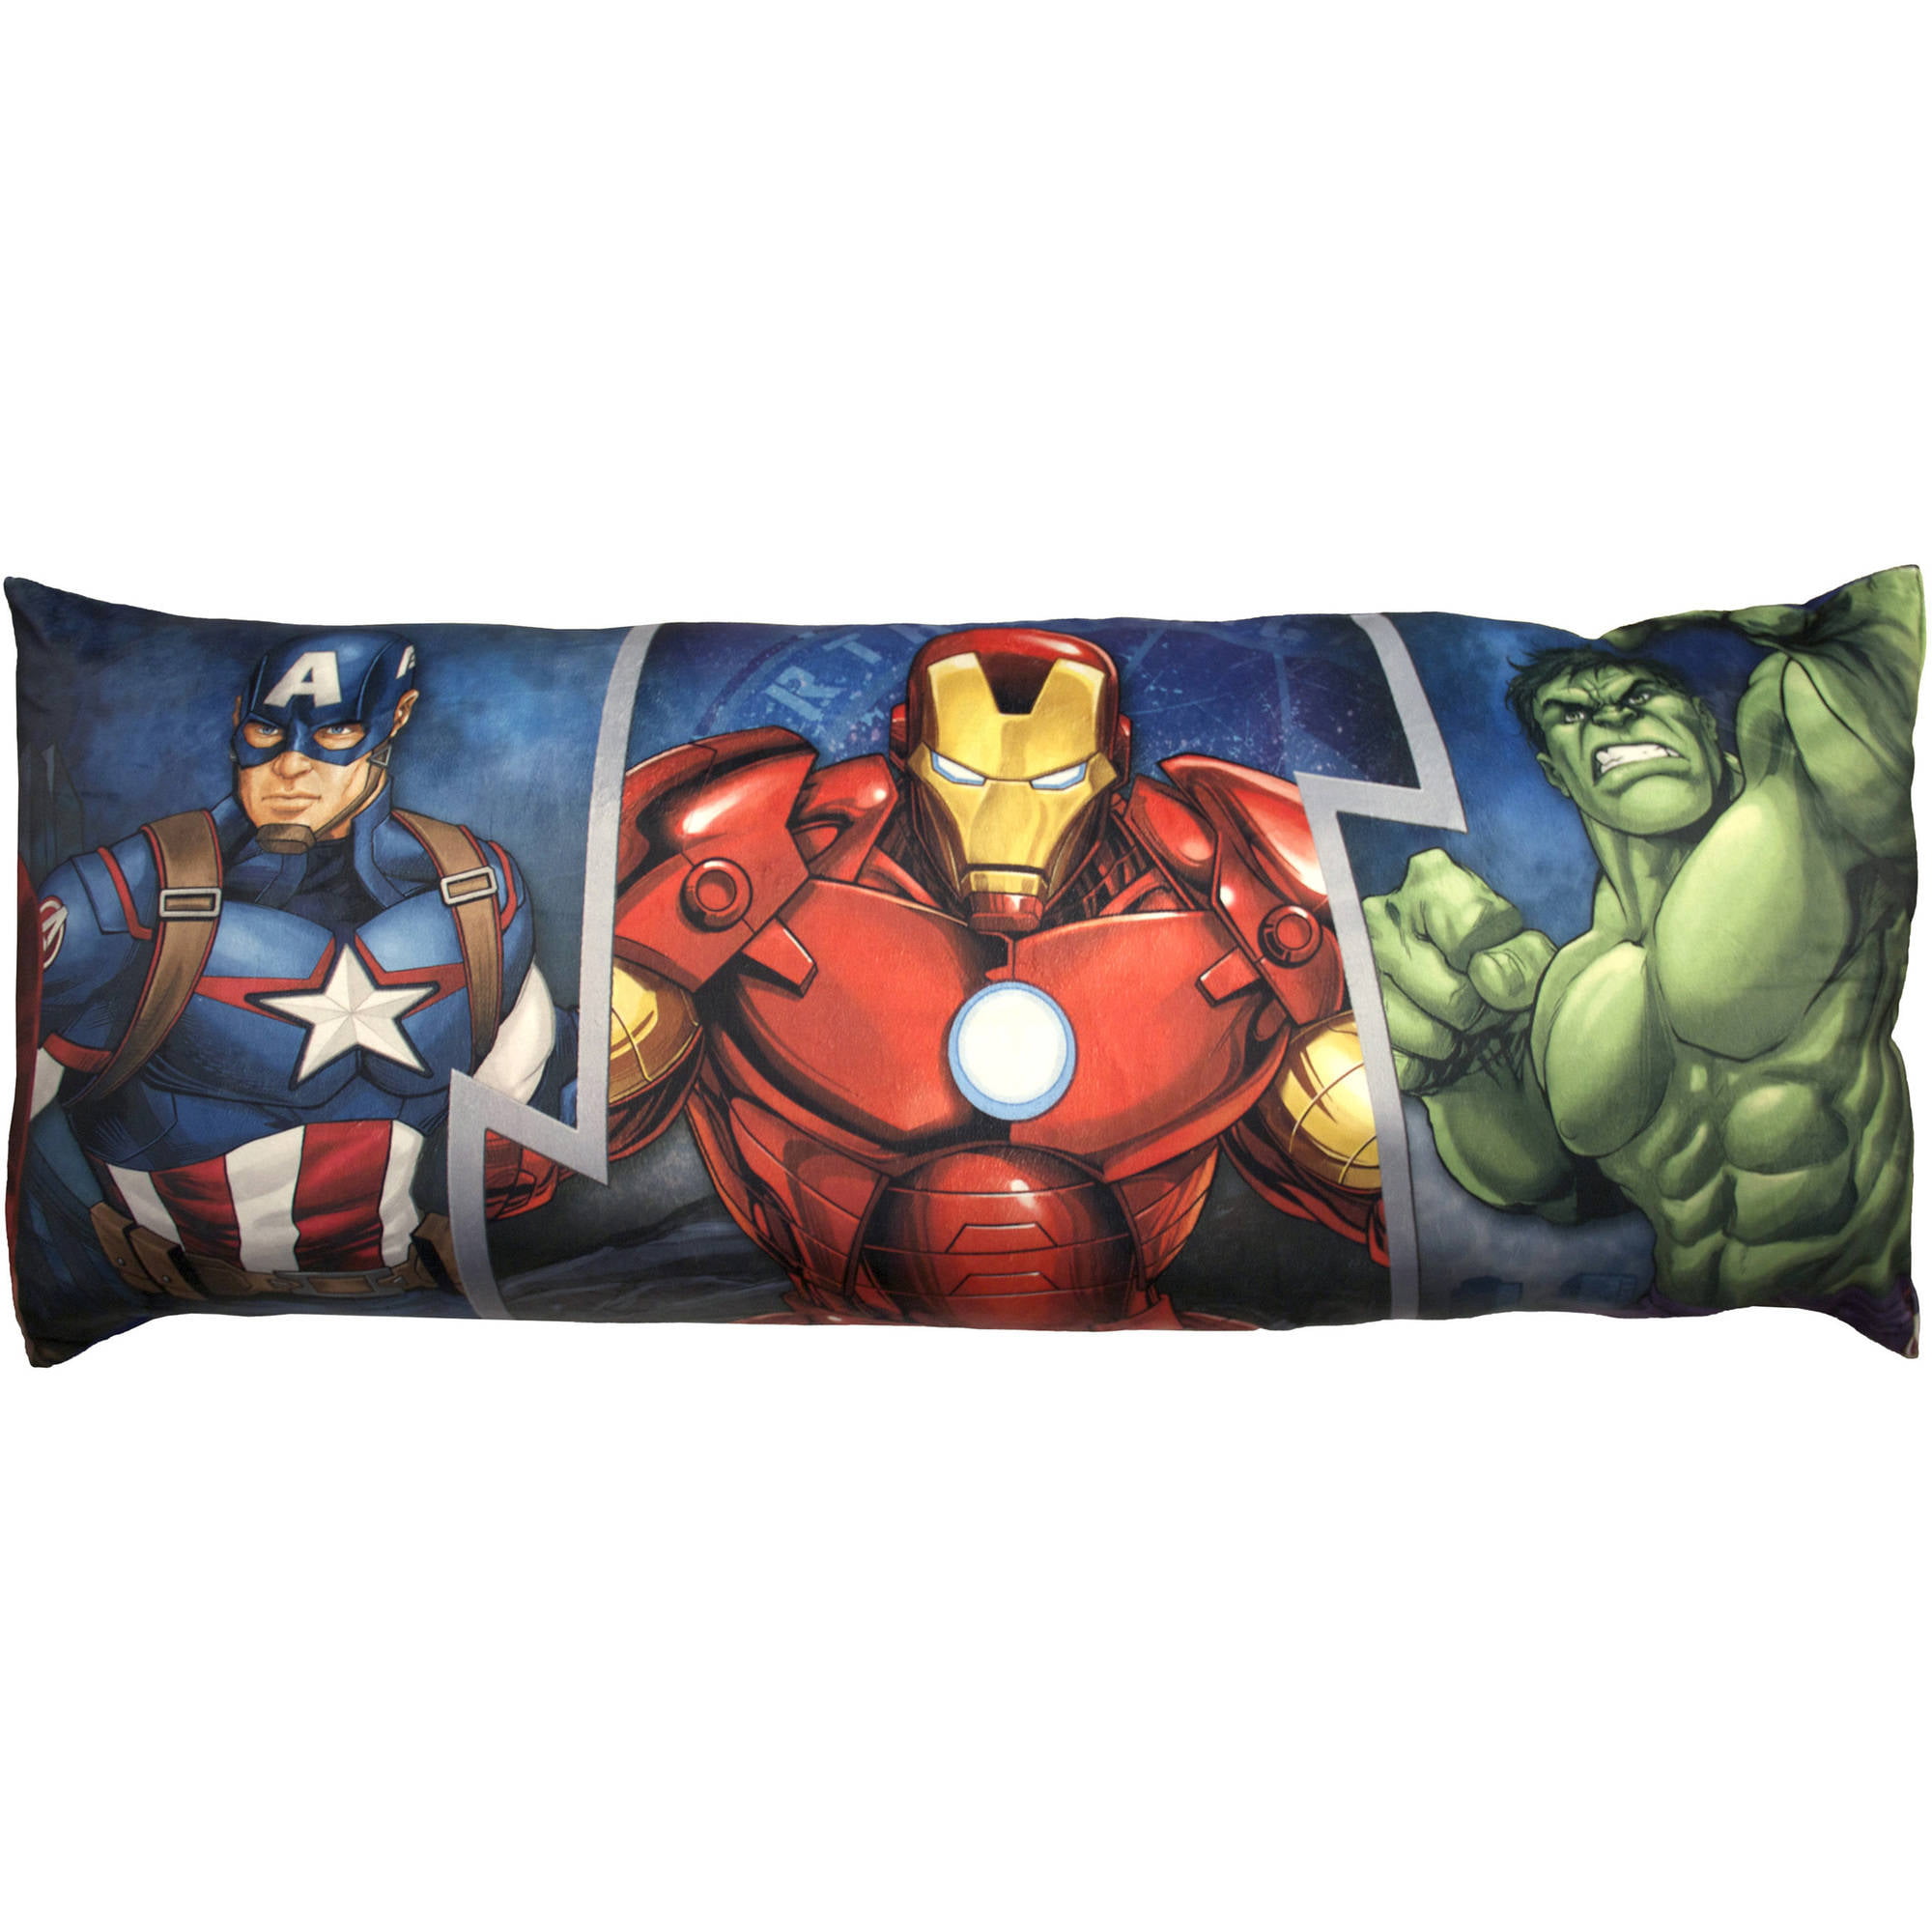 Marvel Avengers Oversized Destroyer Body Pillow, 1 Each